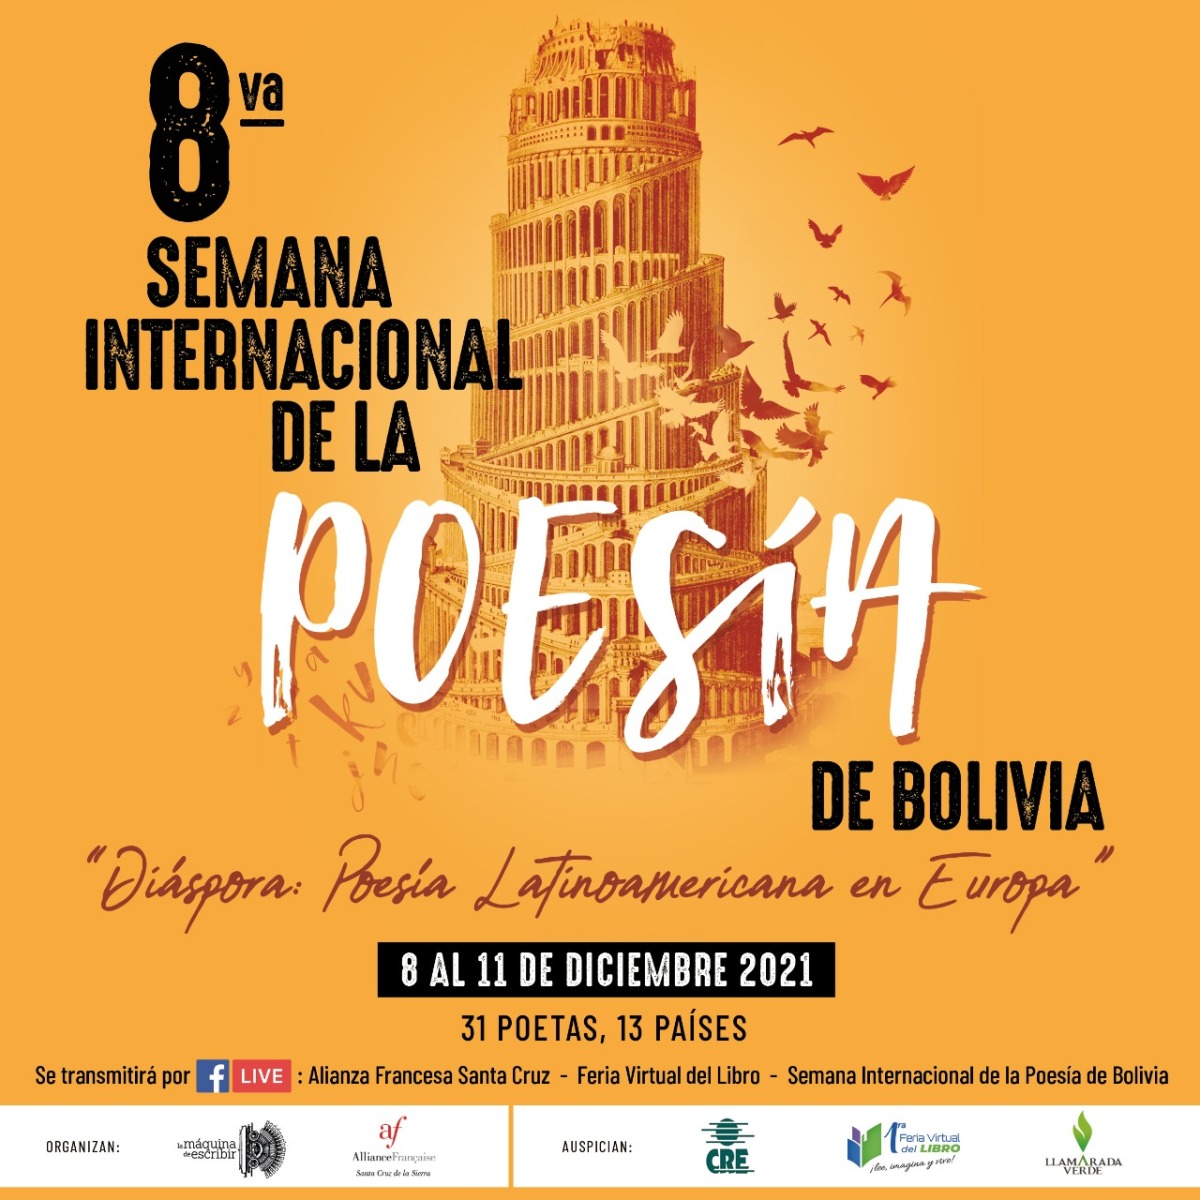 La 8va Semana Internacional de la Poesía en Bolivia reunirá a 31 poetas latinoamericanos residentes en Europa.